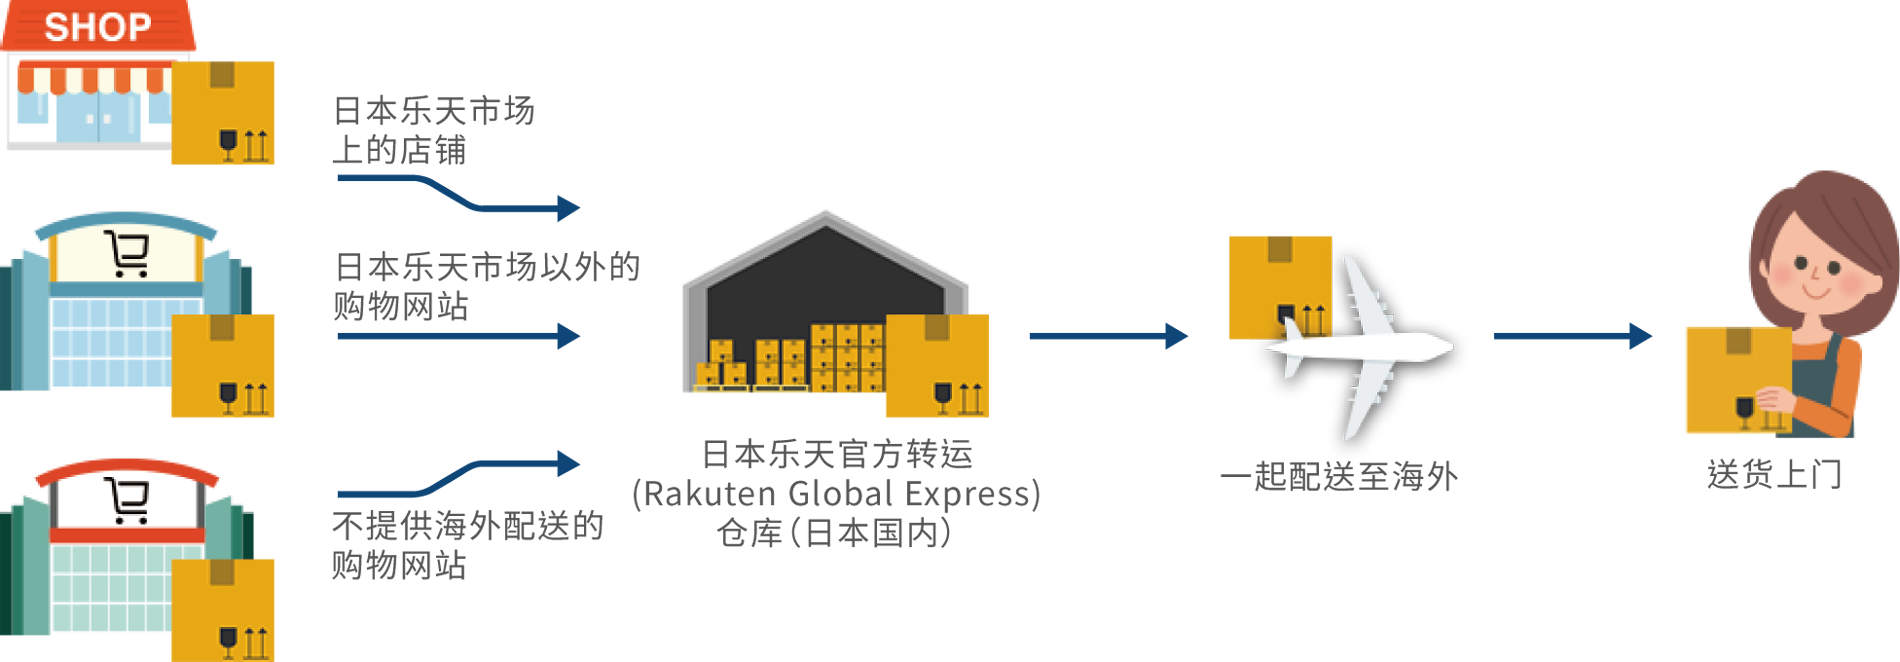 Rakuten Global Express 经济便捷的海外配送服务